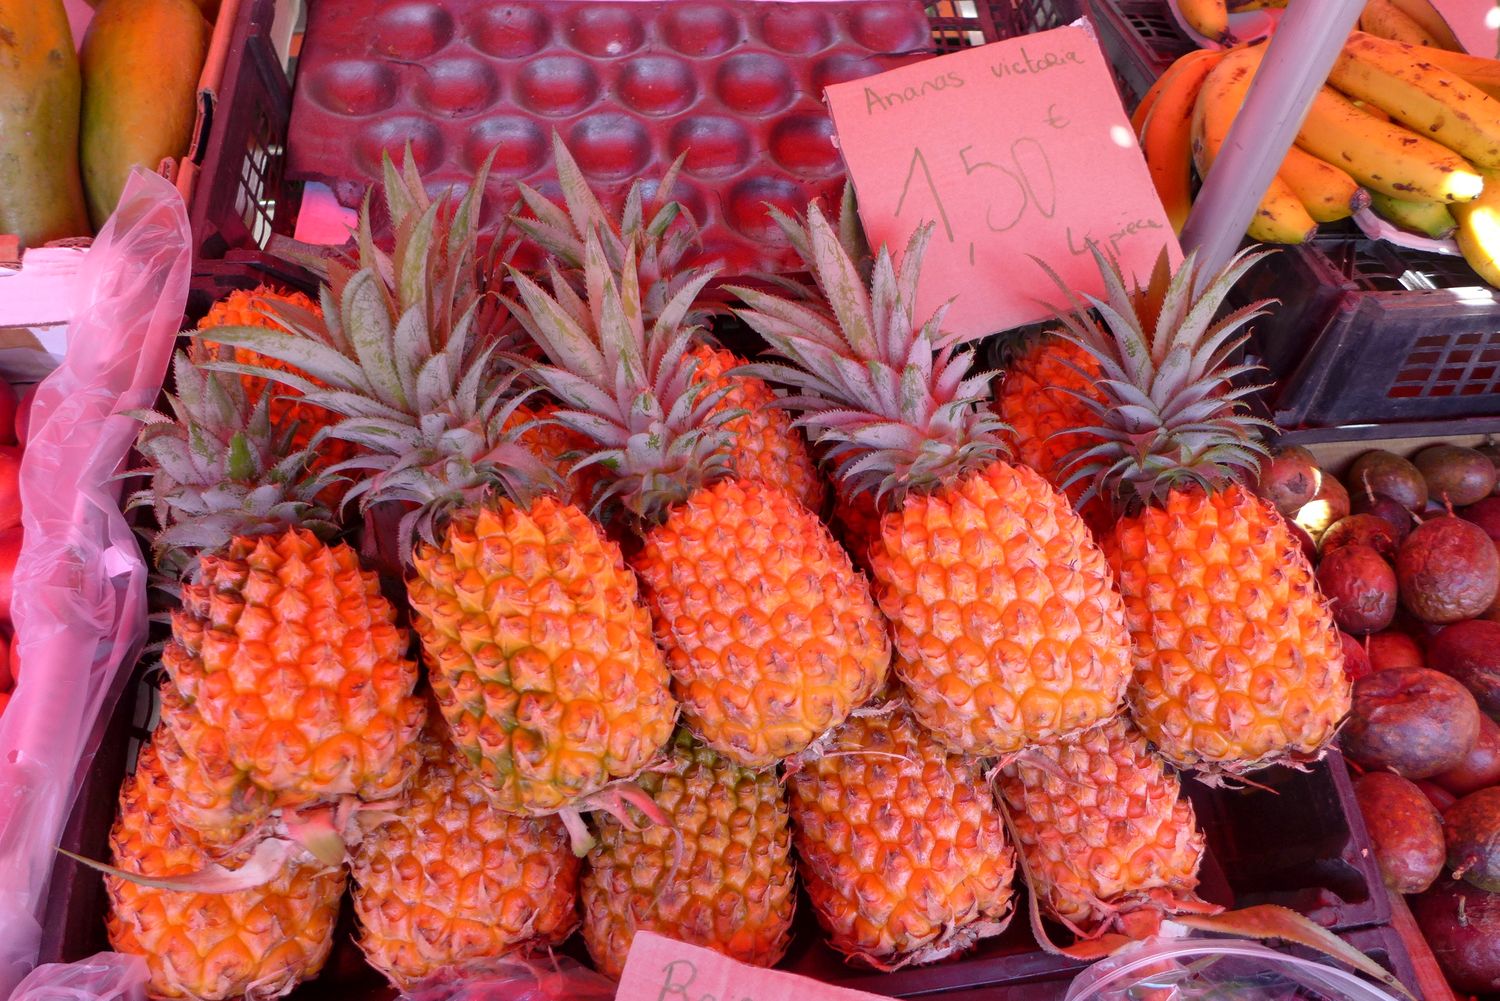 Vous demandiez si des fruits étaient importés ? Et bien malgré le soleil, la réponse oui. Pas l’ananas Victoria en tout cas, qui pousse très bien ici à La Réunion.